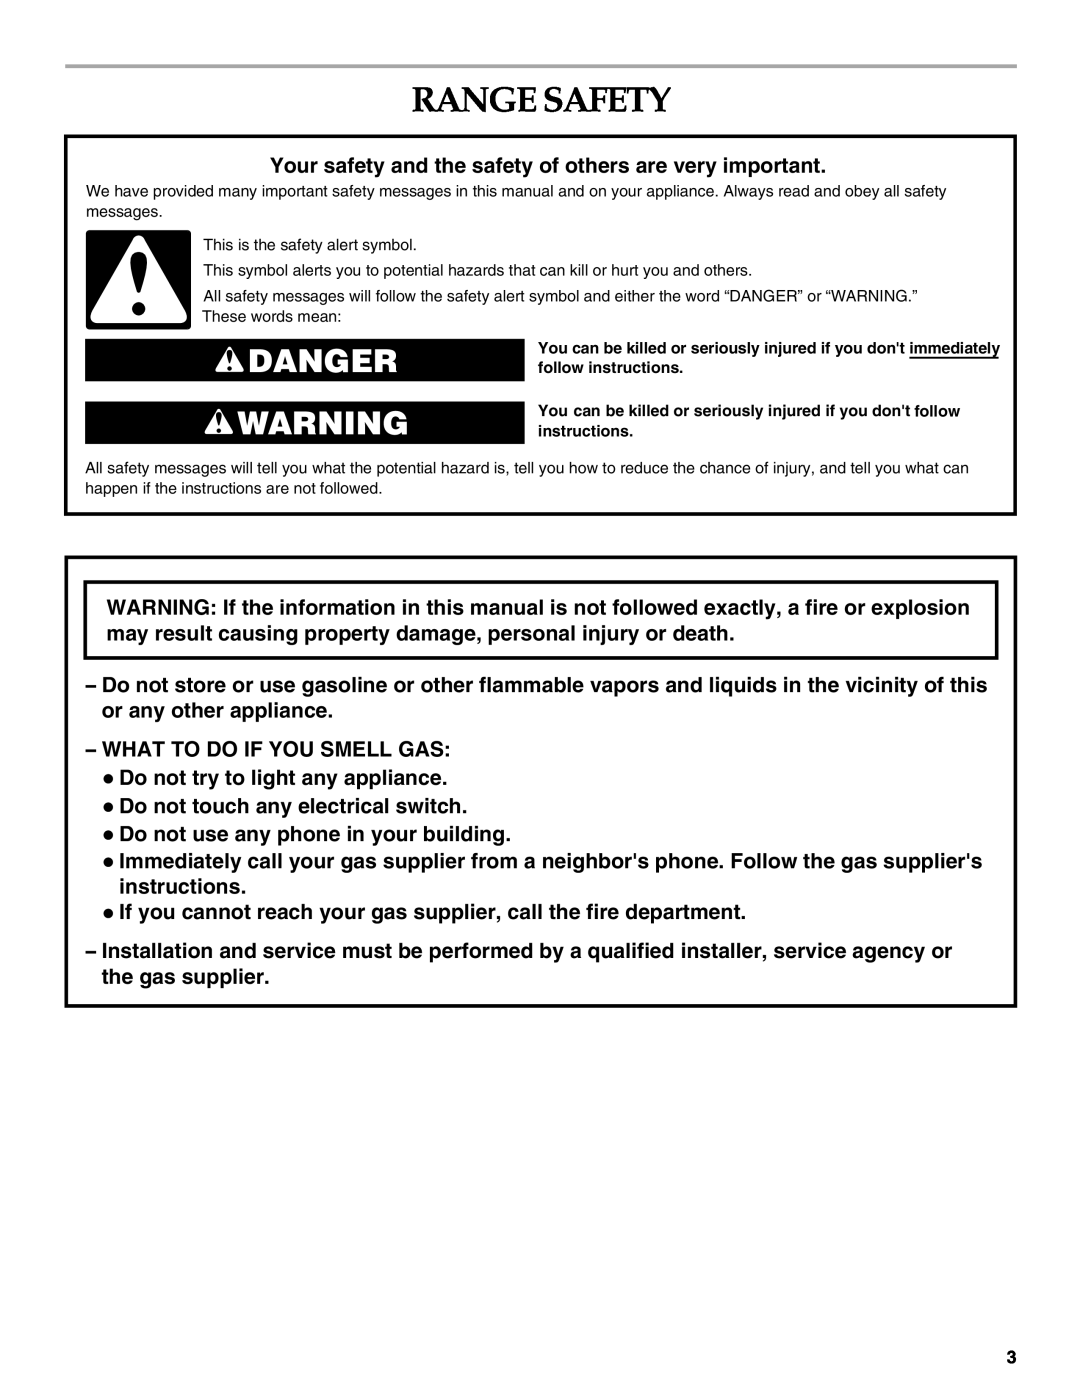 KitchenAid KDRS807 manual Range Safety, Danger 